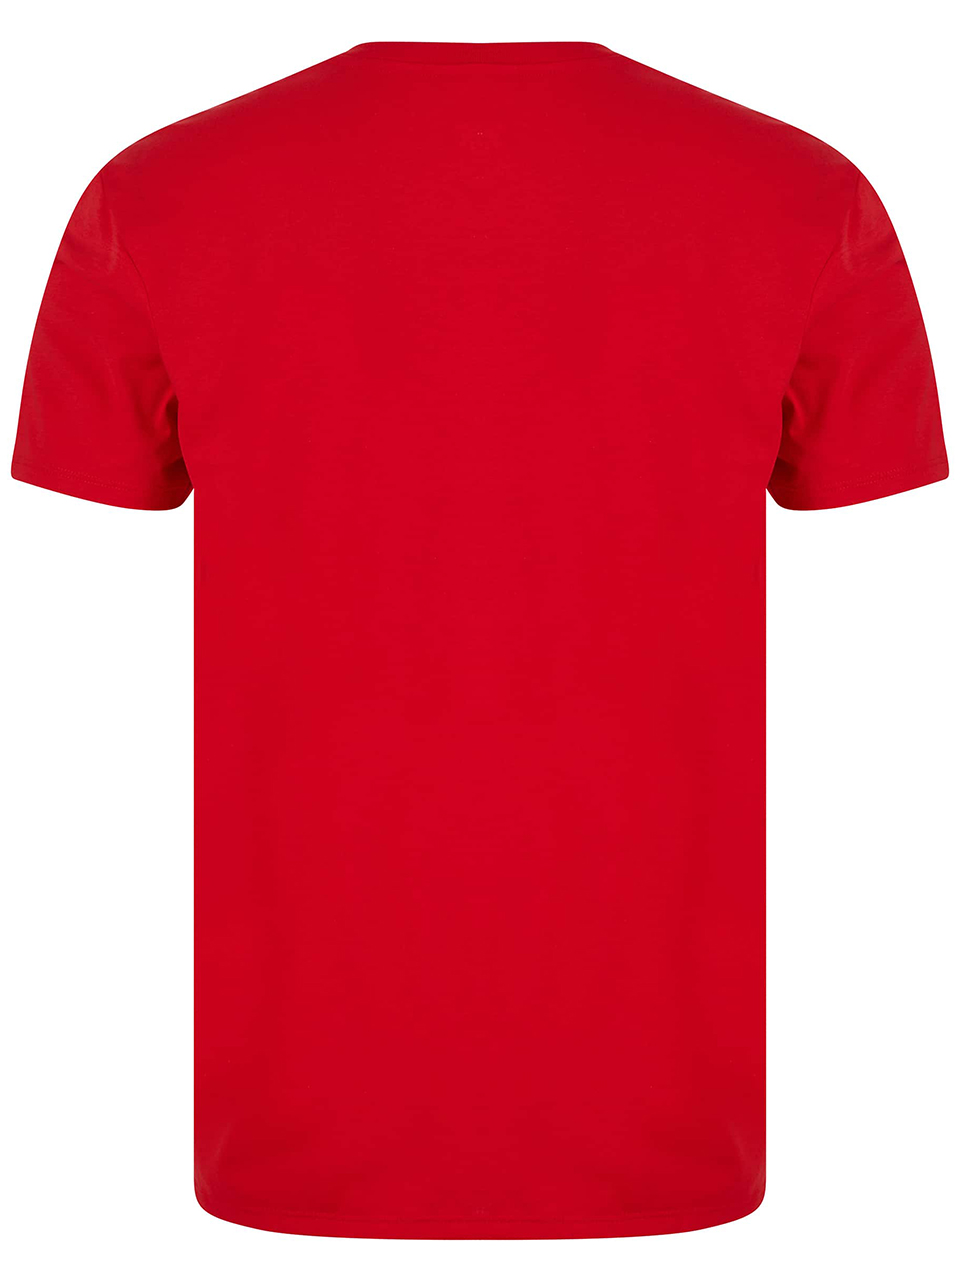 Imagem de: Camiseta Lacoste Vermelha com Logo